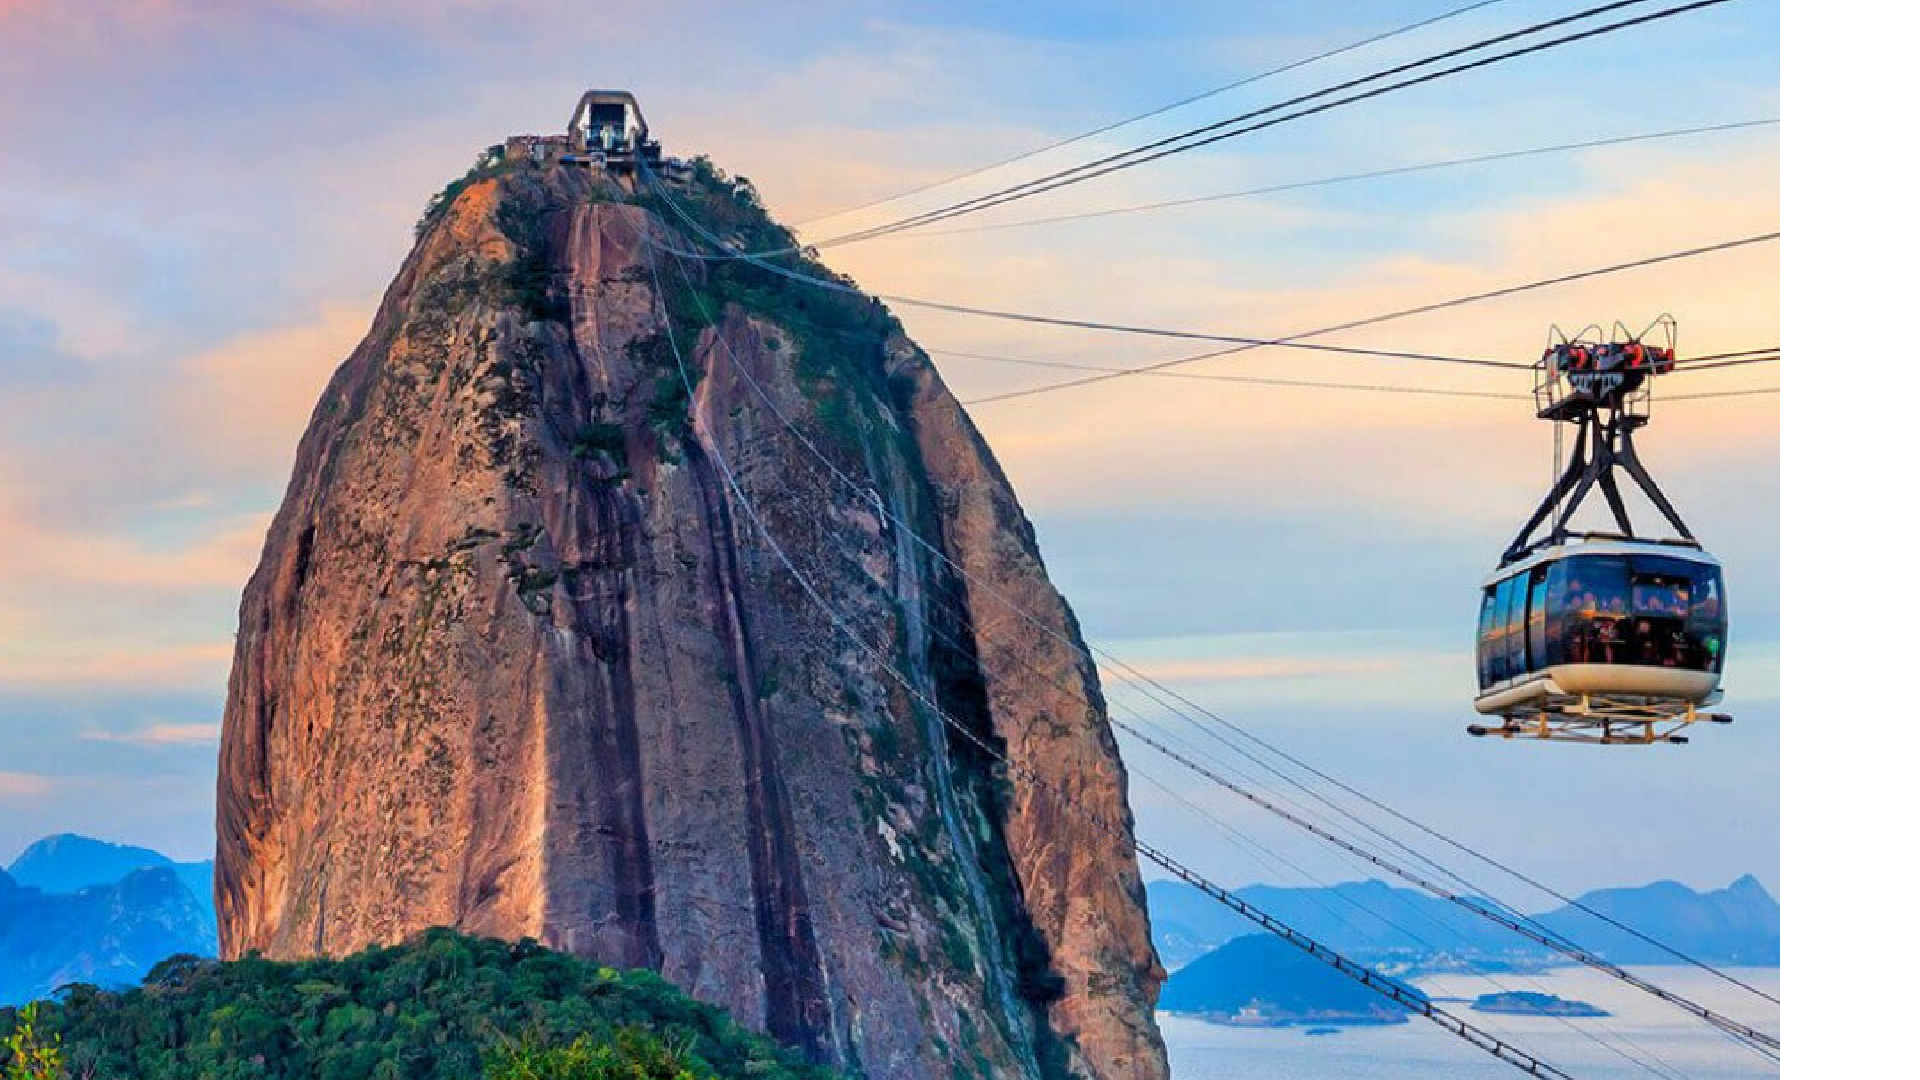 Rock In Rio: dicas de hospedagens e passeios